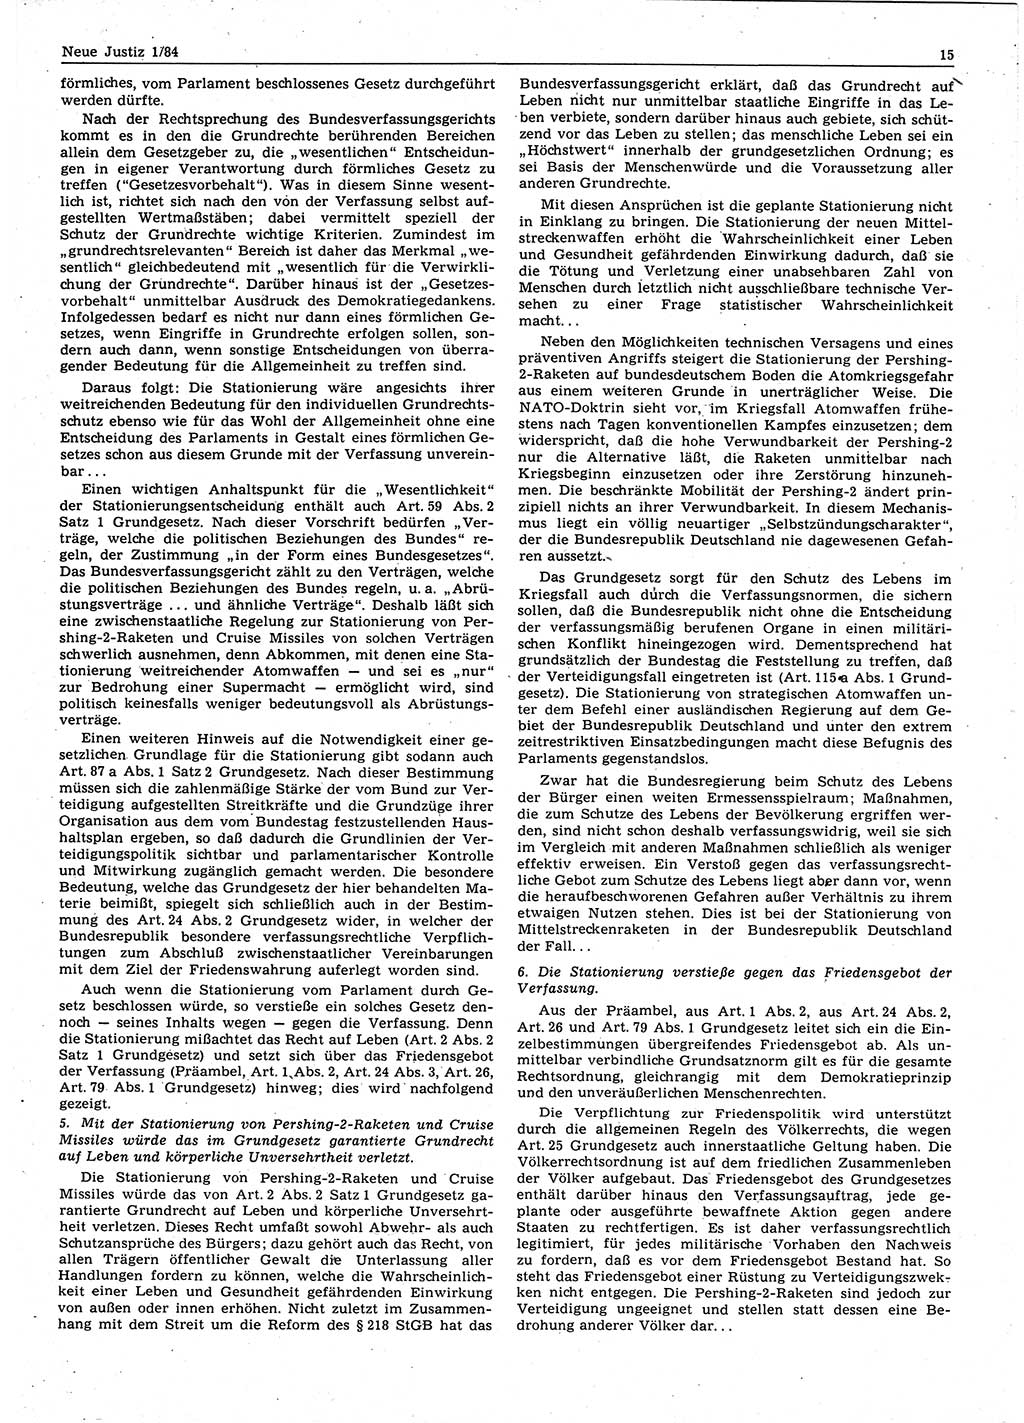 Neue Justiz (NJ), Zeitschrift für sozialistisches Recht und Gesetzlichkeit [Deutsche Demokratische Republik (DDR)], 38. Jahrgang 1984, Seite 15 (NJ DDR 1984, S. 15)